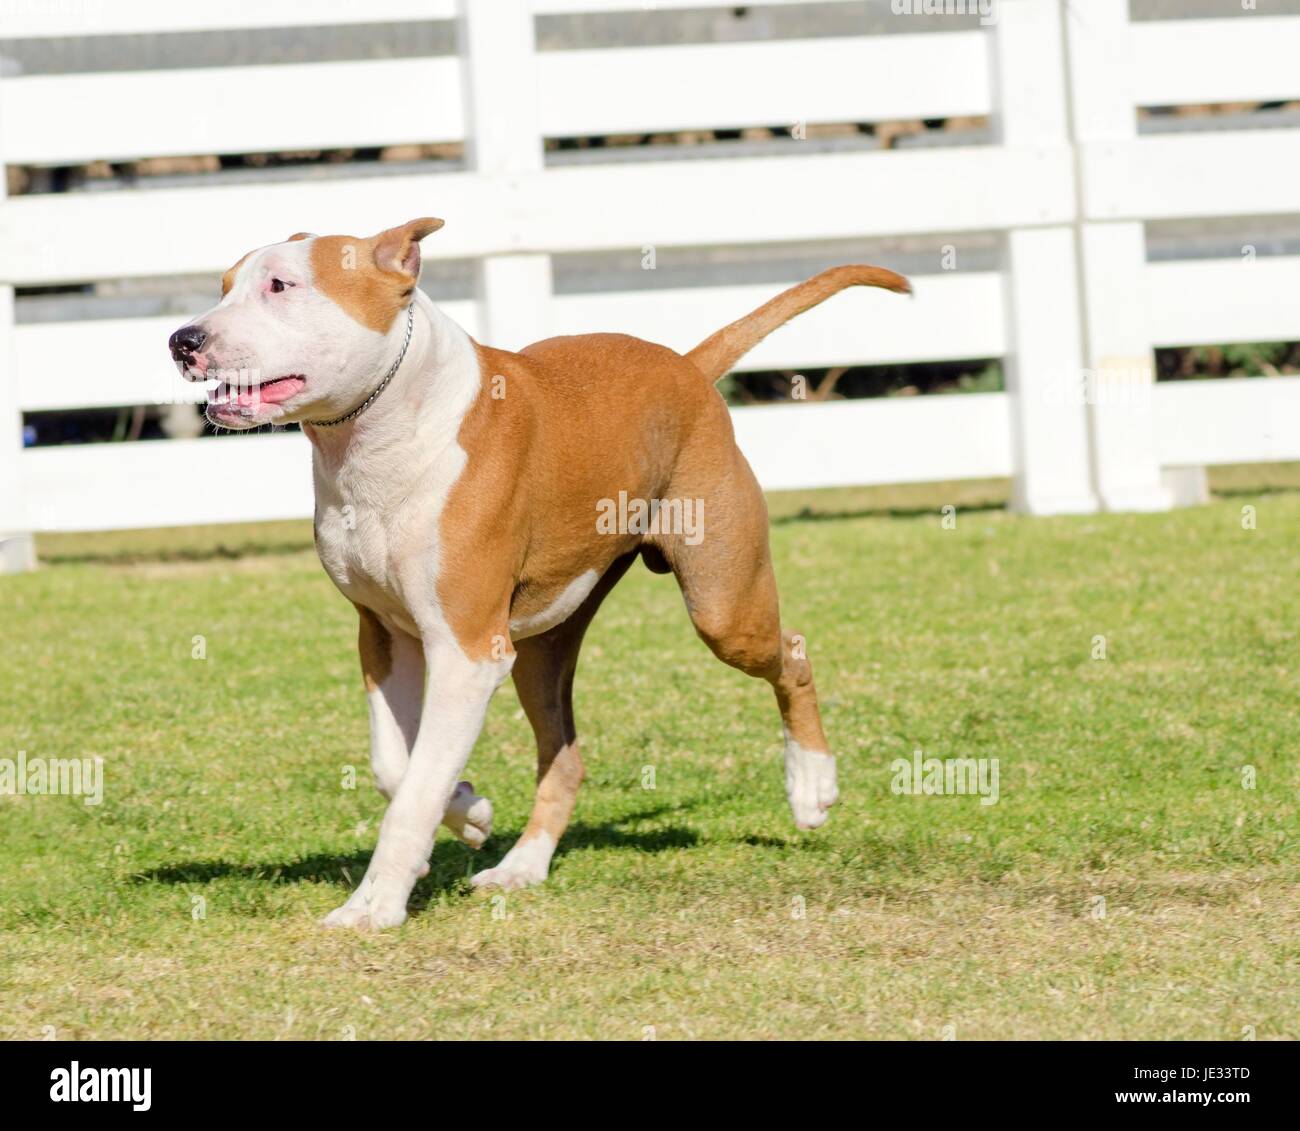 Un petit, jeune, beau, blanc et sable rouge American Staffordshire Terrier marcher sur l'herbe tout en collant sa langue, et à la fois ludique et joyeux. Ses oreilles sont coupées. Banque D'Images